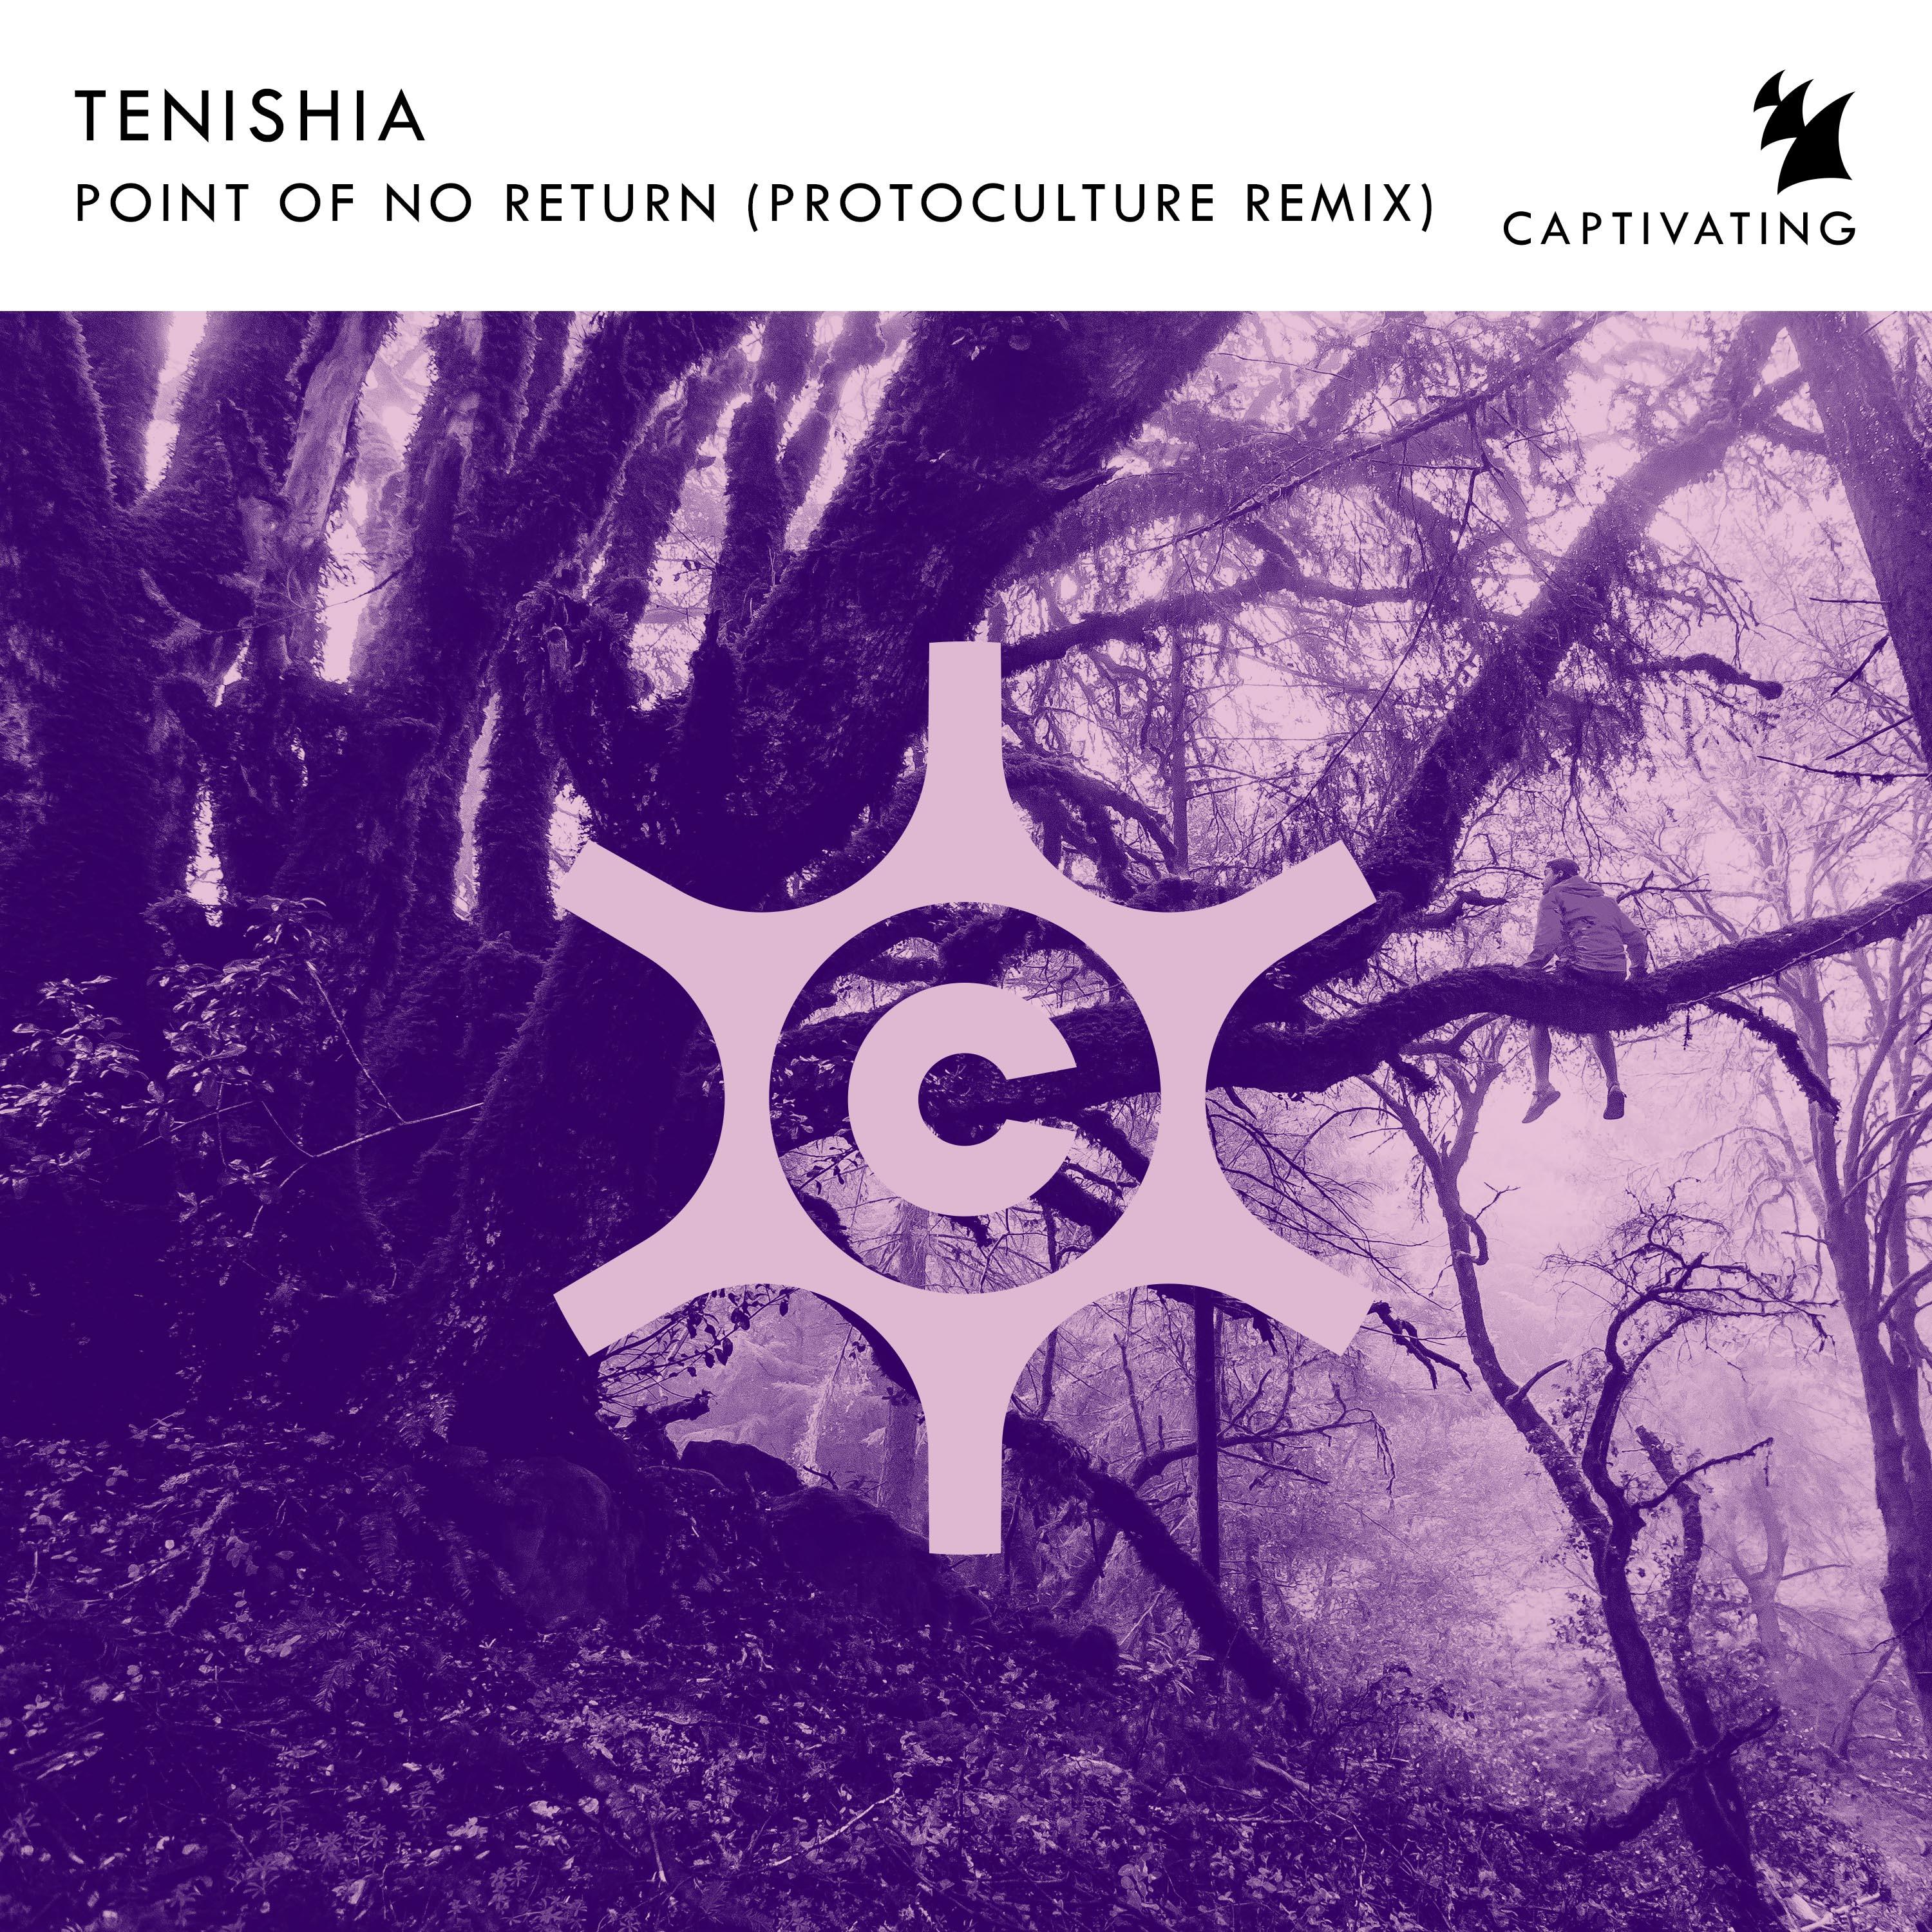 Tenishia 专 辑(Point Of No Return (Protoculture Remix)).更 多 Tenishia 相 关 专 辑 ...